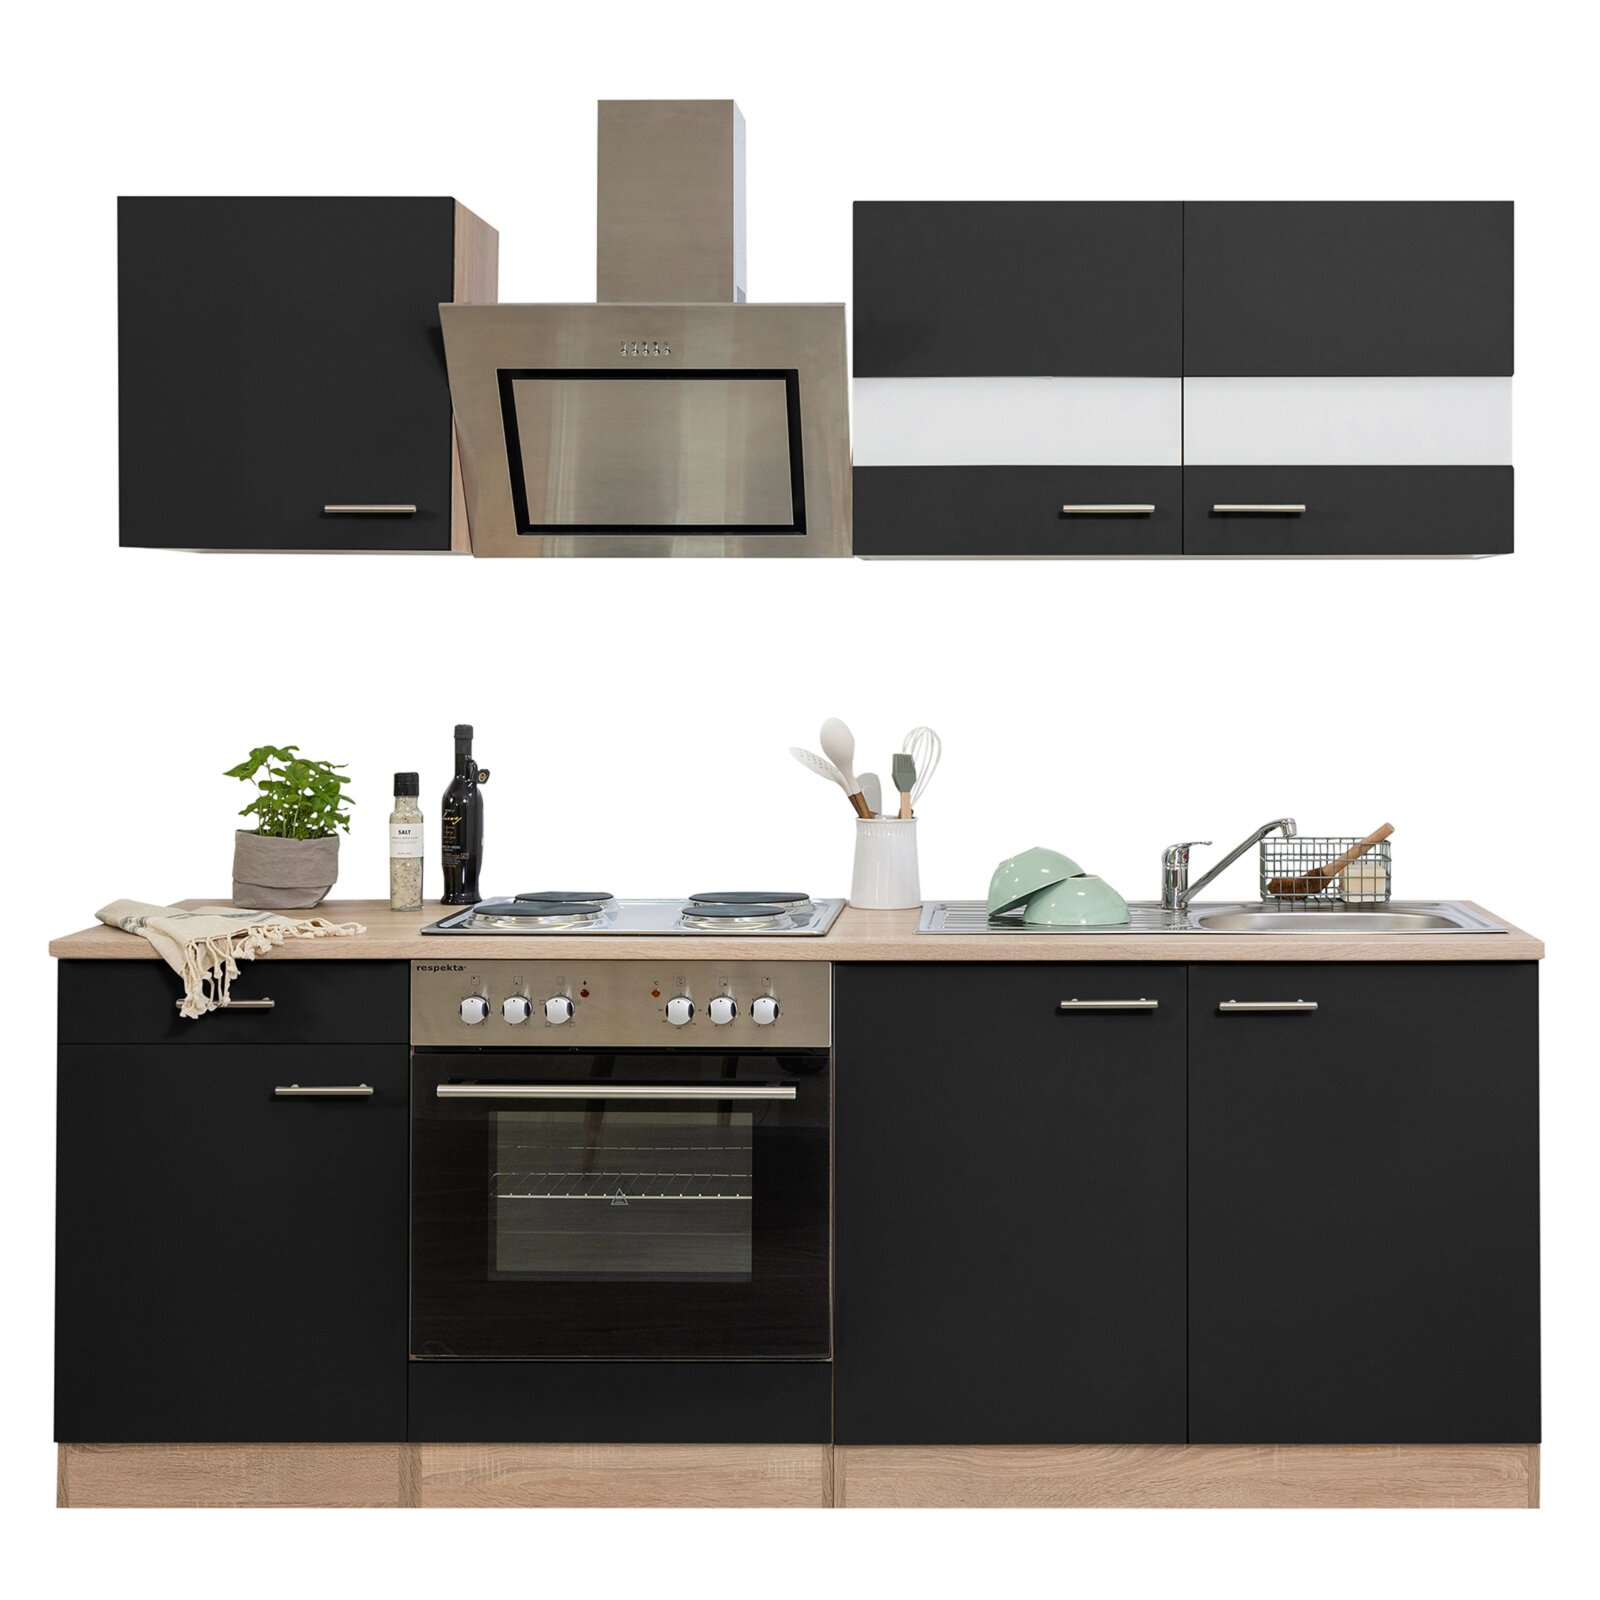 RESPEKTA Küchenzeile - schwarz - Eiche sägerau - mit E-Geräten - 210 cm |  Online bei ROLLER kaufen